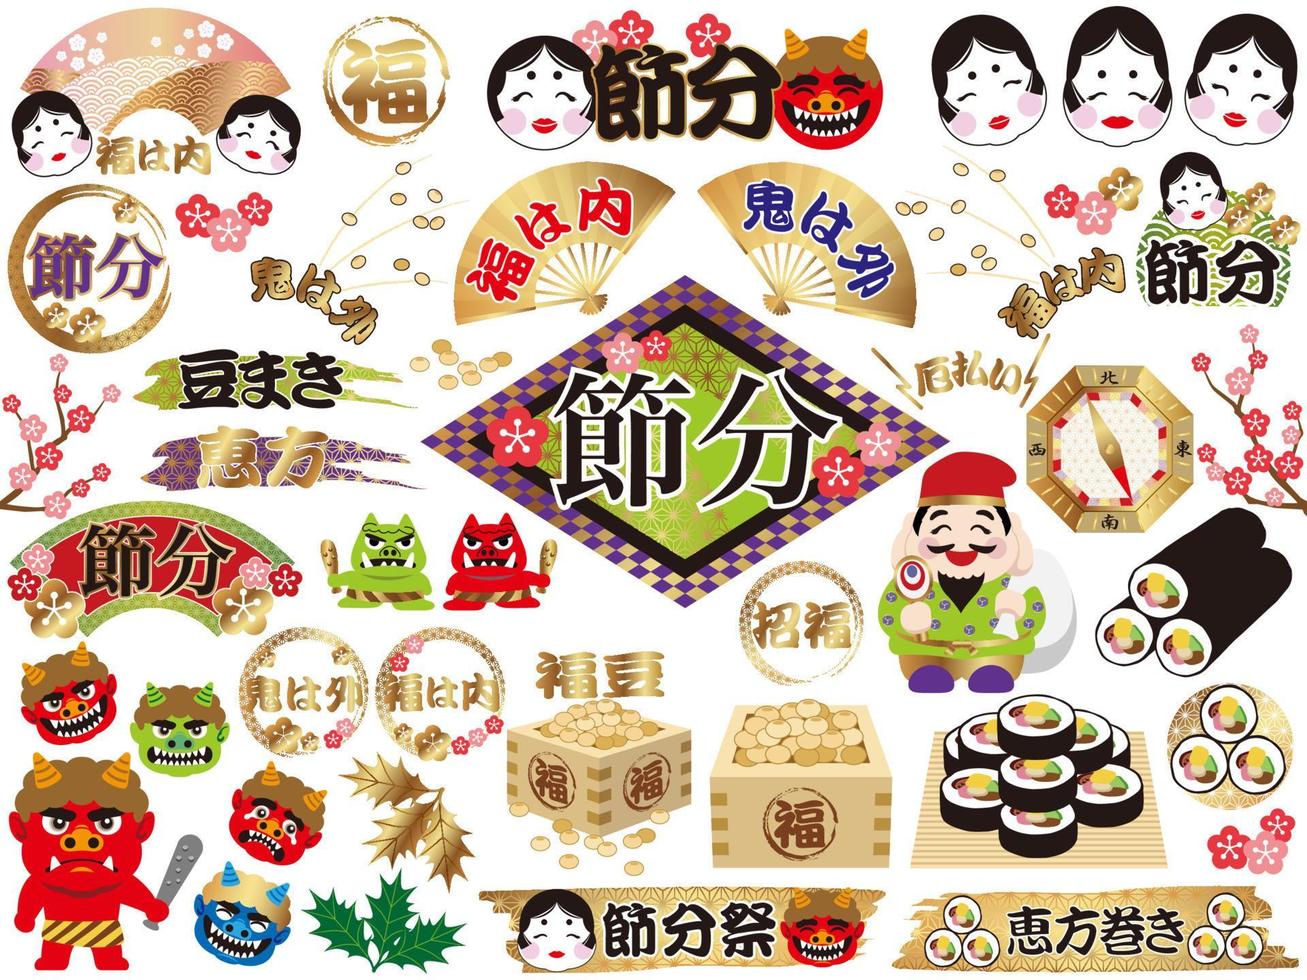 éléments de conception pour le setsubun japonais - la fin du festival d'hiver. traductions de texte -la fin de l'hiver, la fortune, la fortune entre et les démons sortent, les rouleaux de sushi de direction chanceux. vecteur